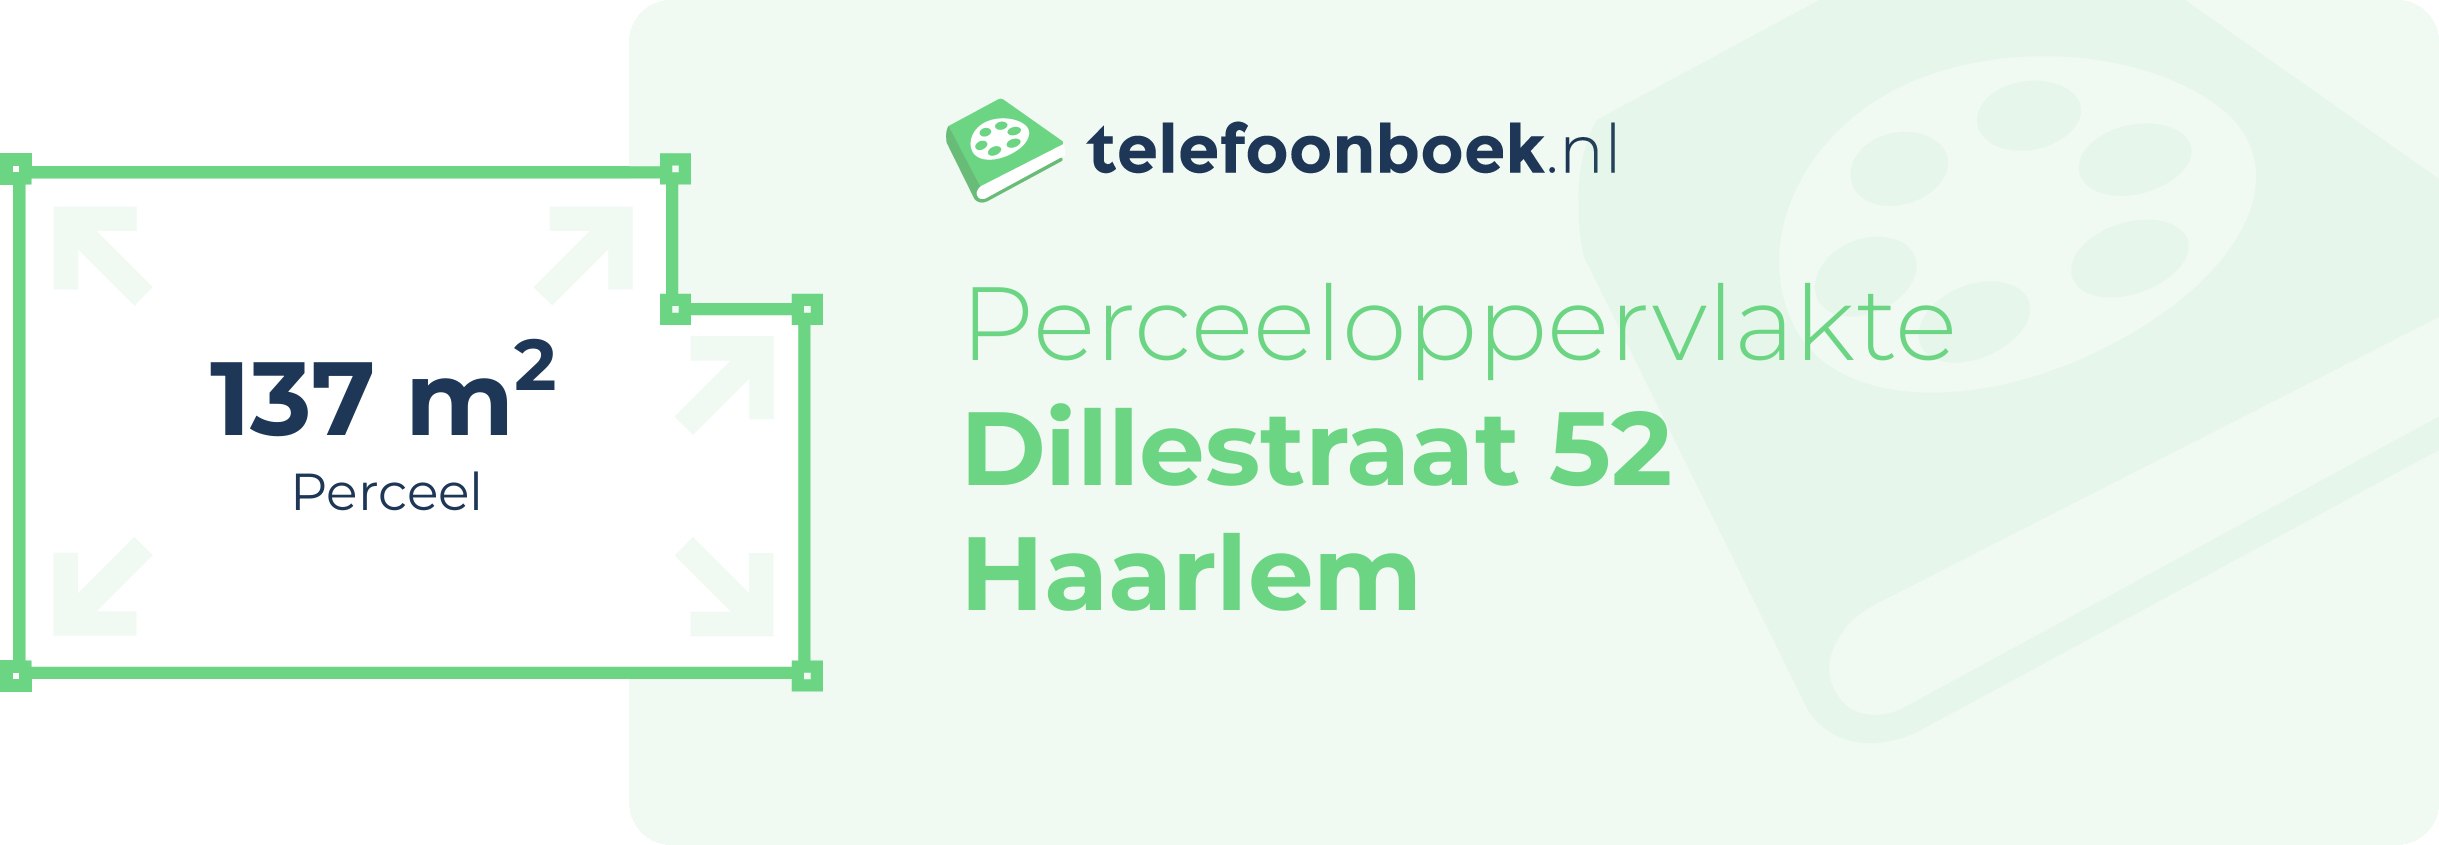 Perceeloppervlakte Dillestraat 52 Haarlem